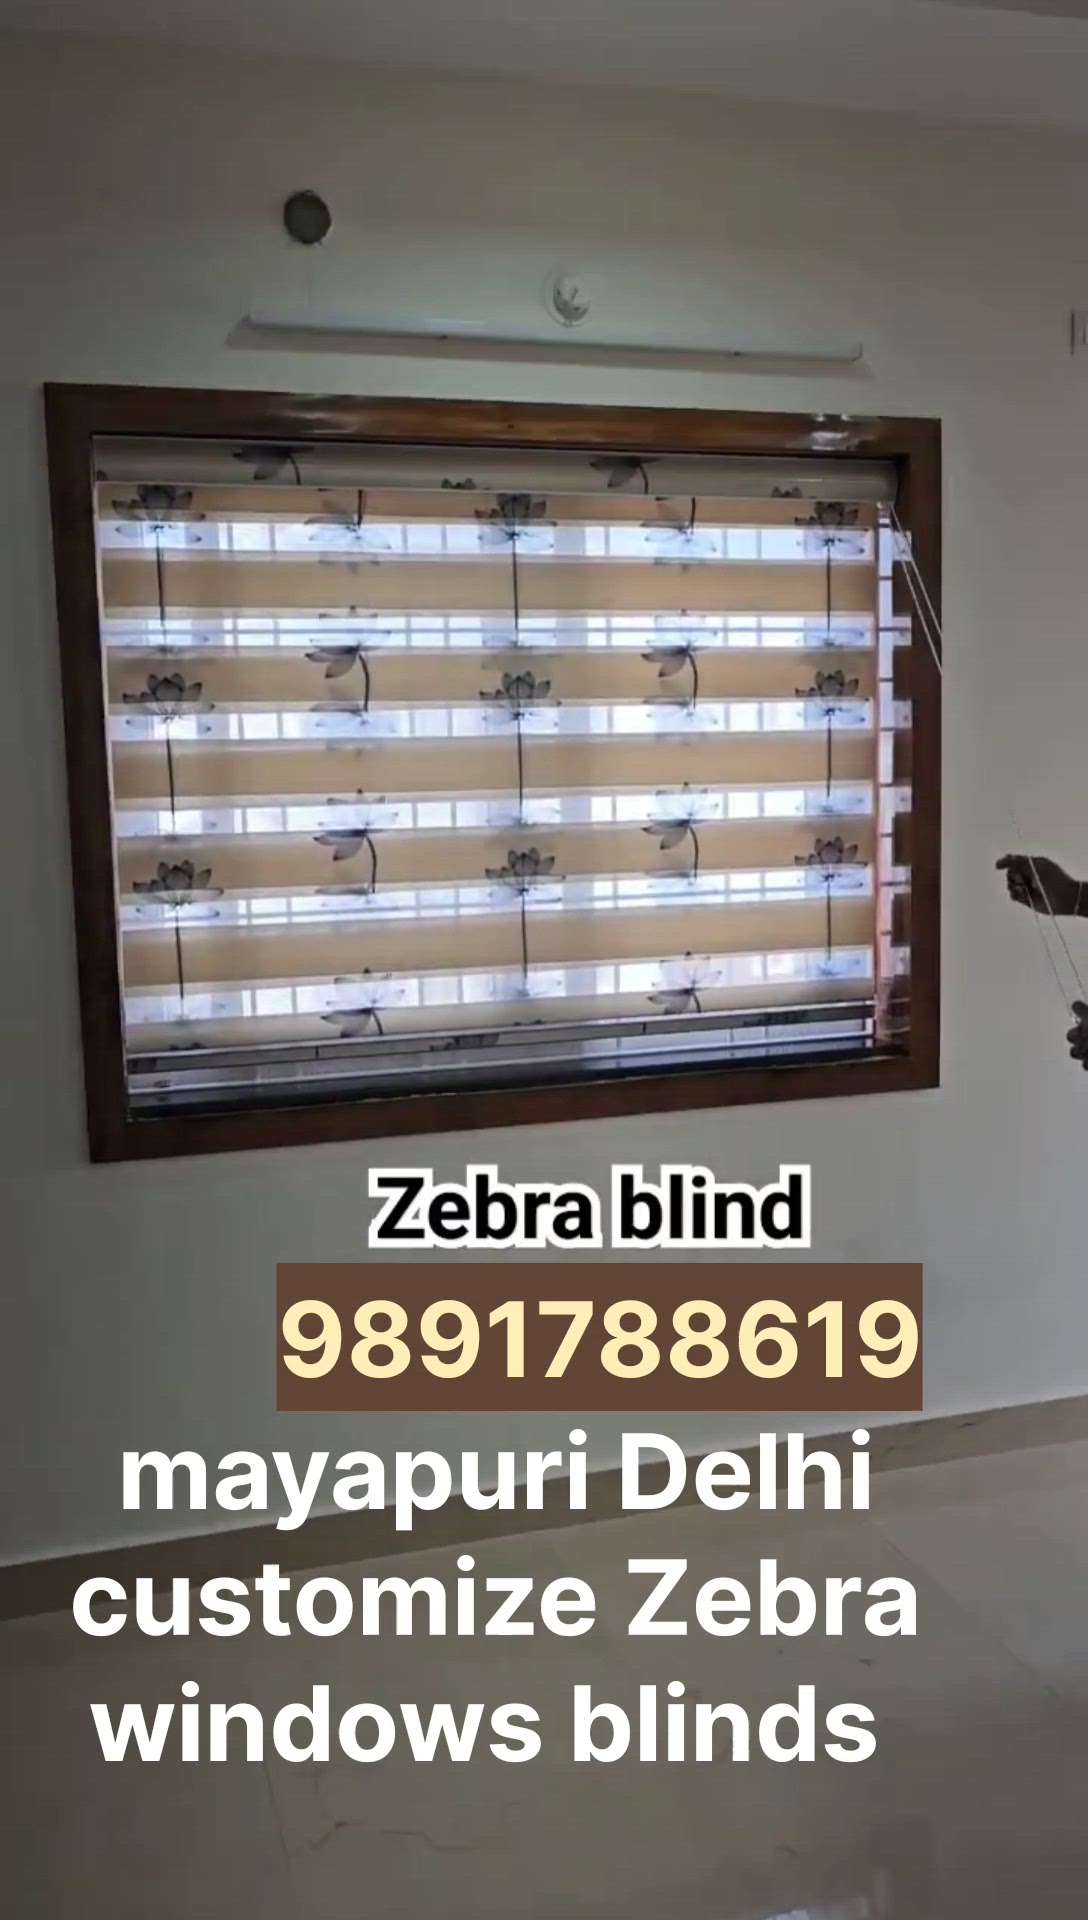 customize Zebra windows blinds installation mayapuri Delhi contact 9891788619